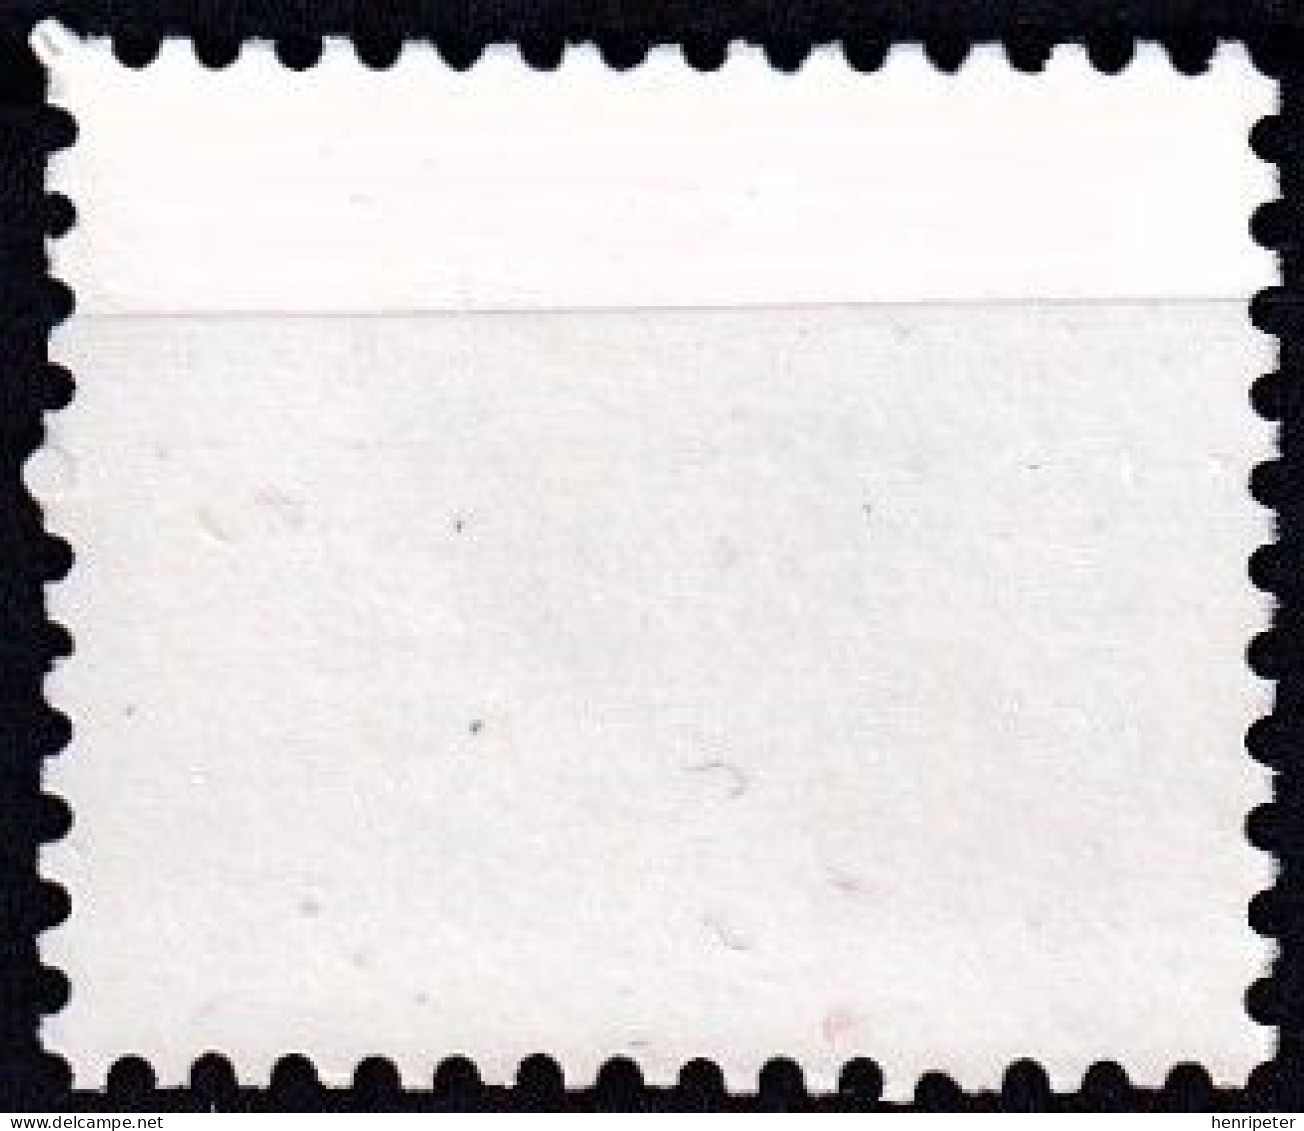 Timbre-poste Gommé Dentelé Neuf** - Figures Chiffres Mark Post And Emblem - N° 1745 (Yvert Et Tellier) - Brésil 1985 - Ungebraucht